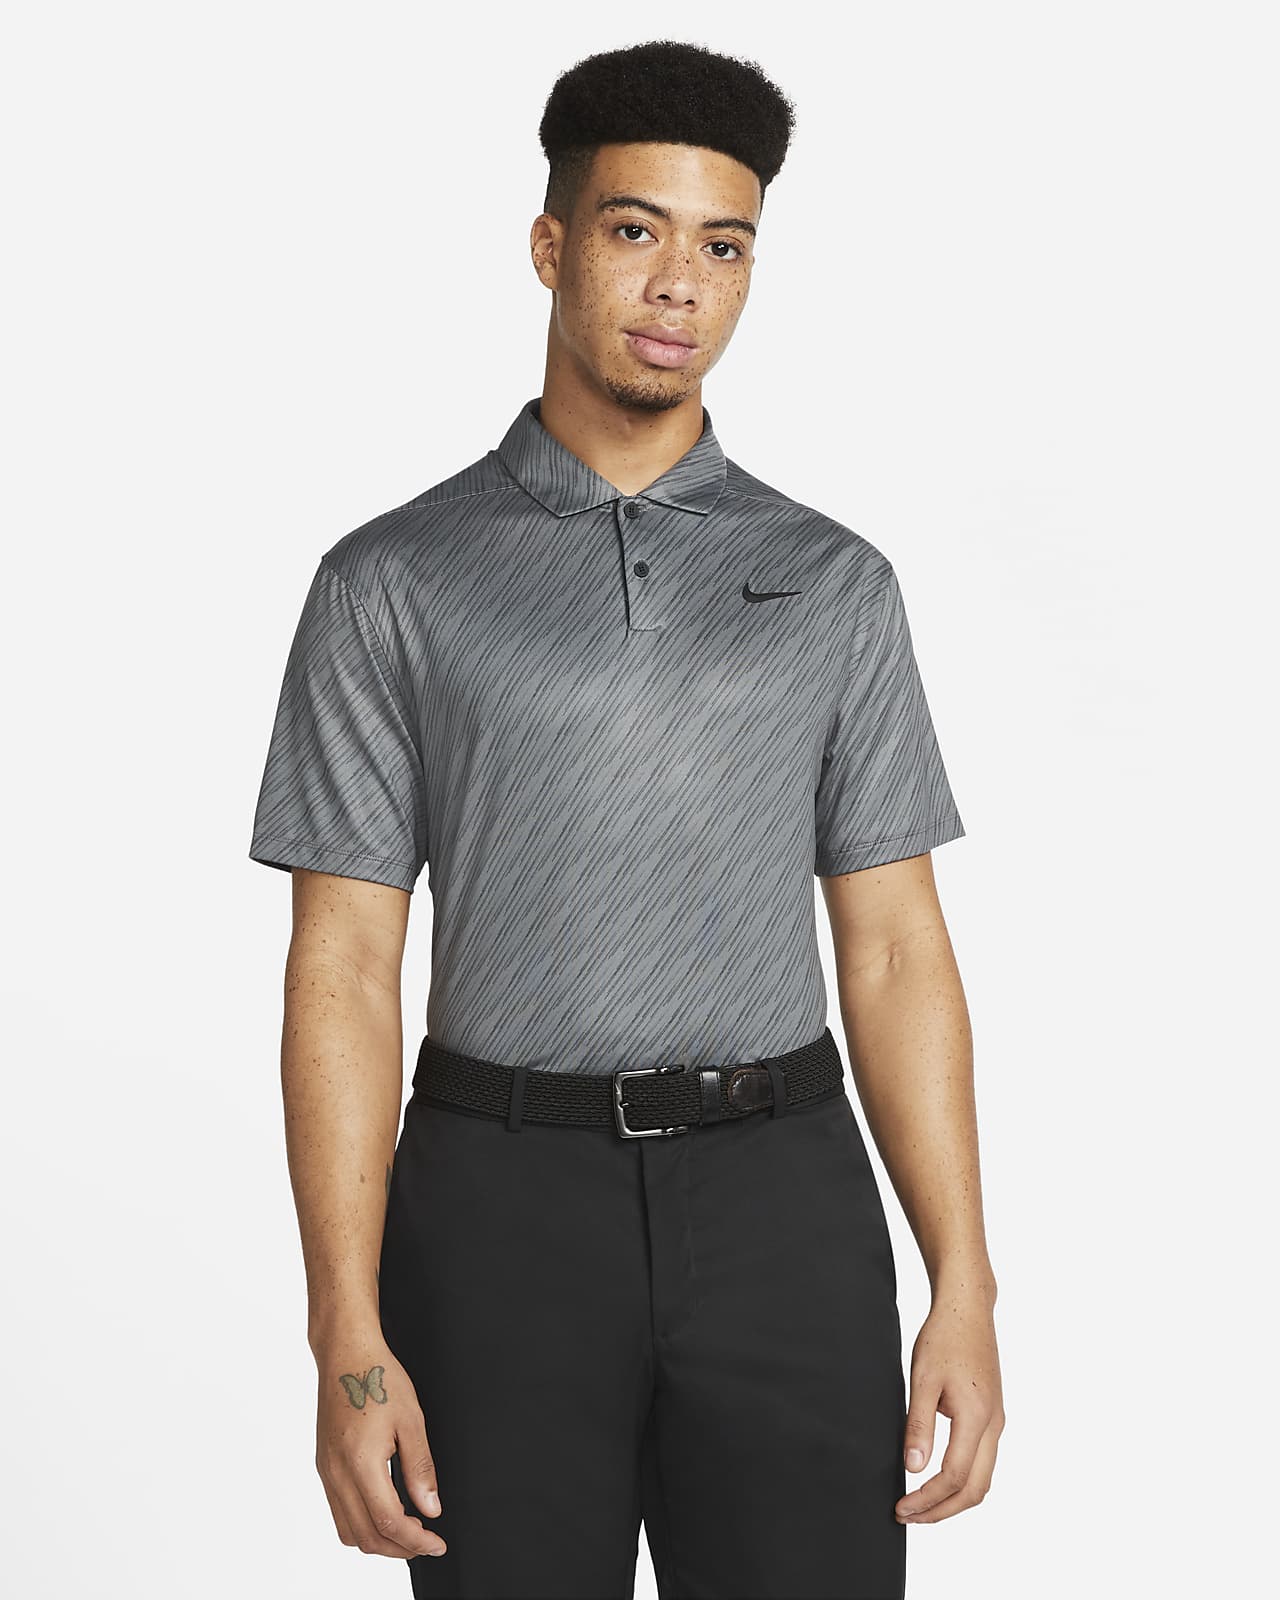 Nike Dri-FIT Vapor Men's Striped Golf Polo